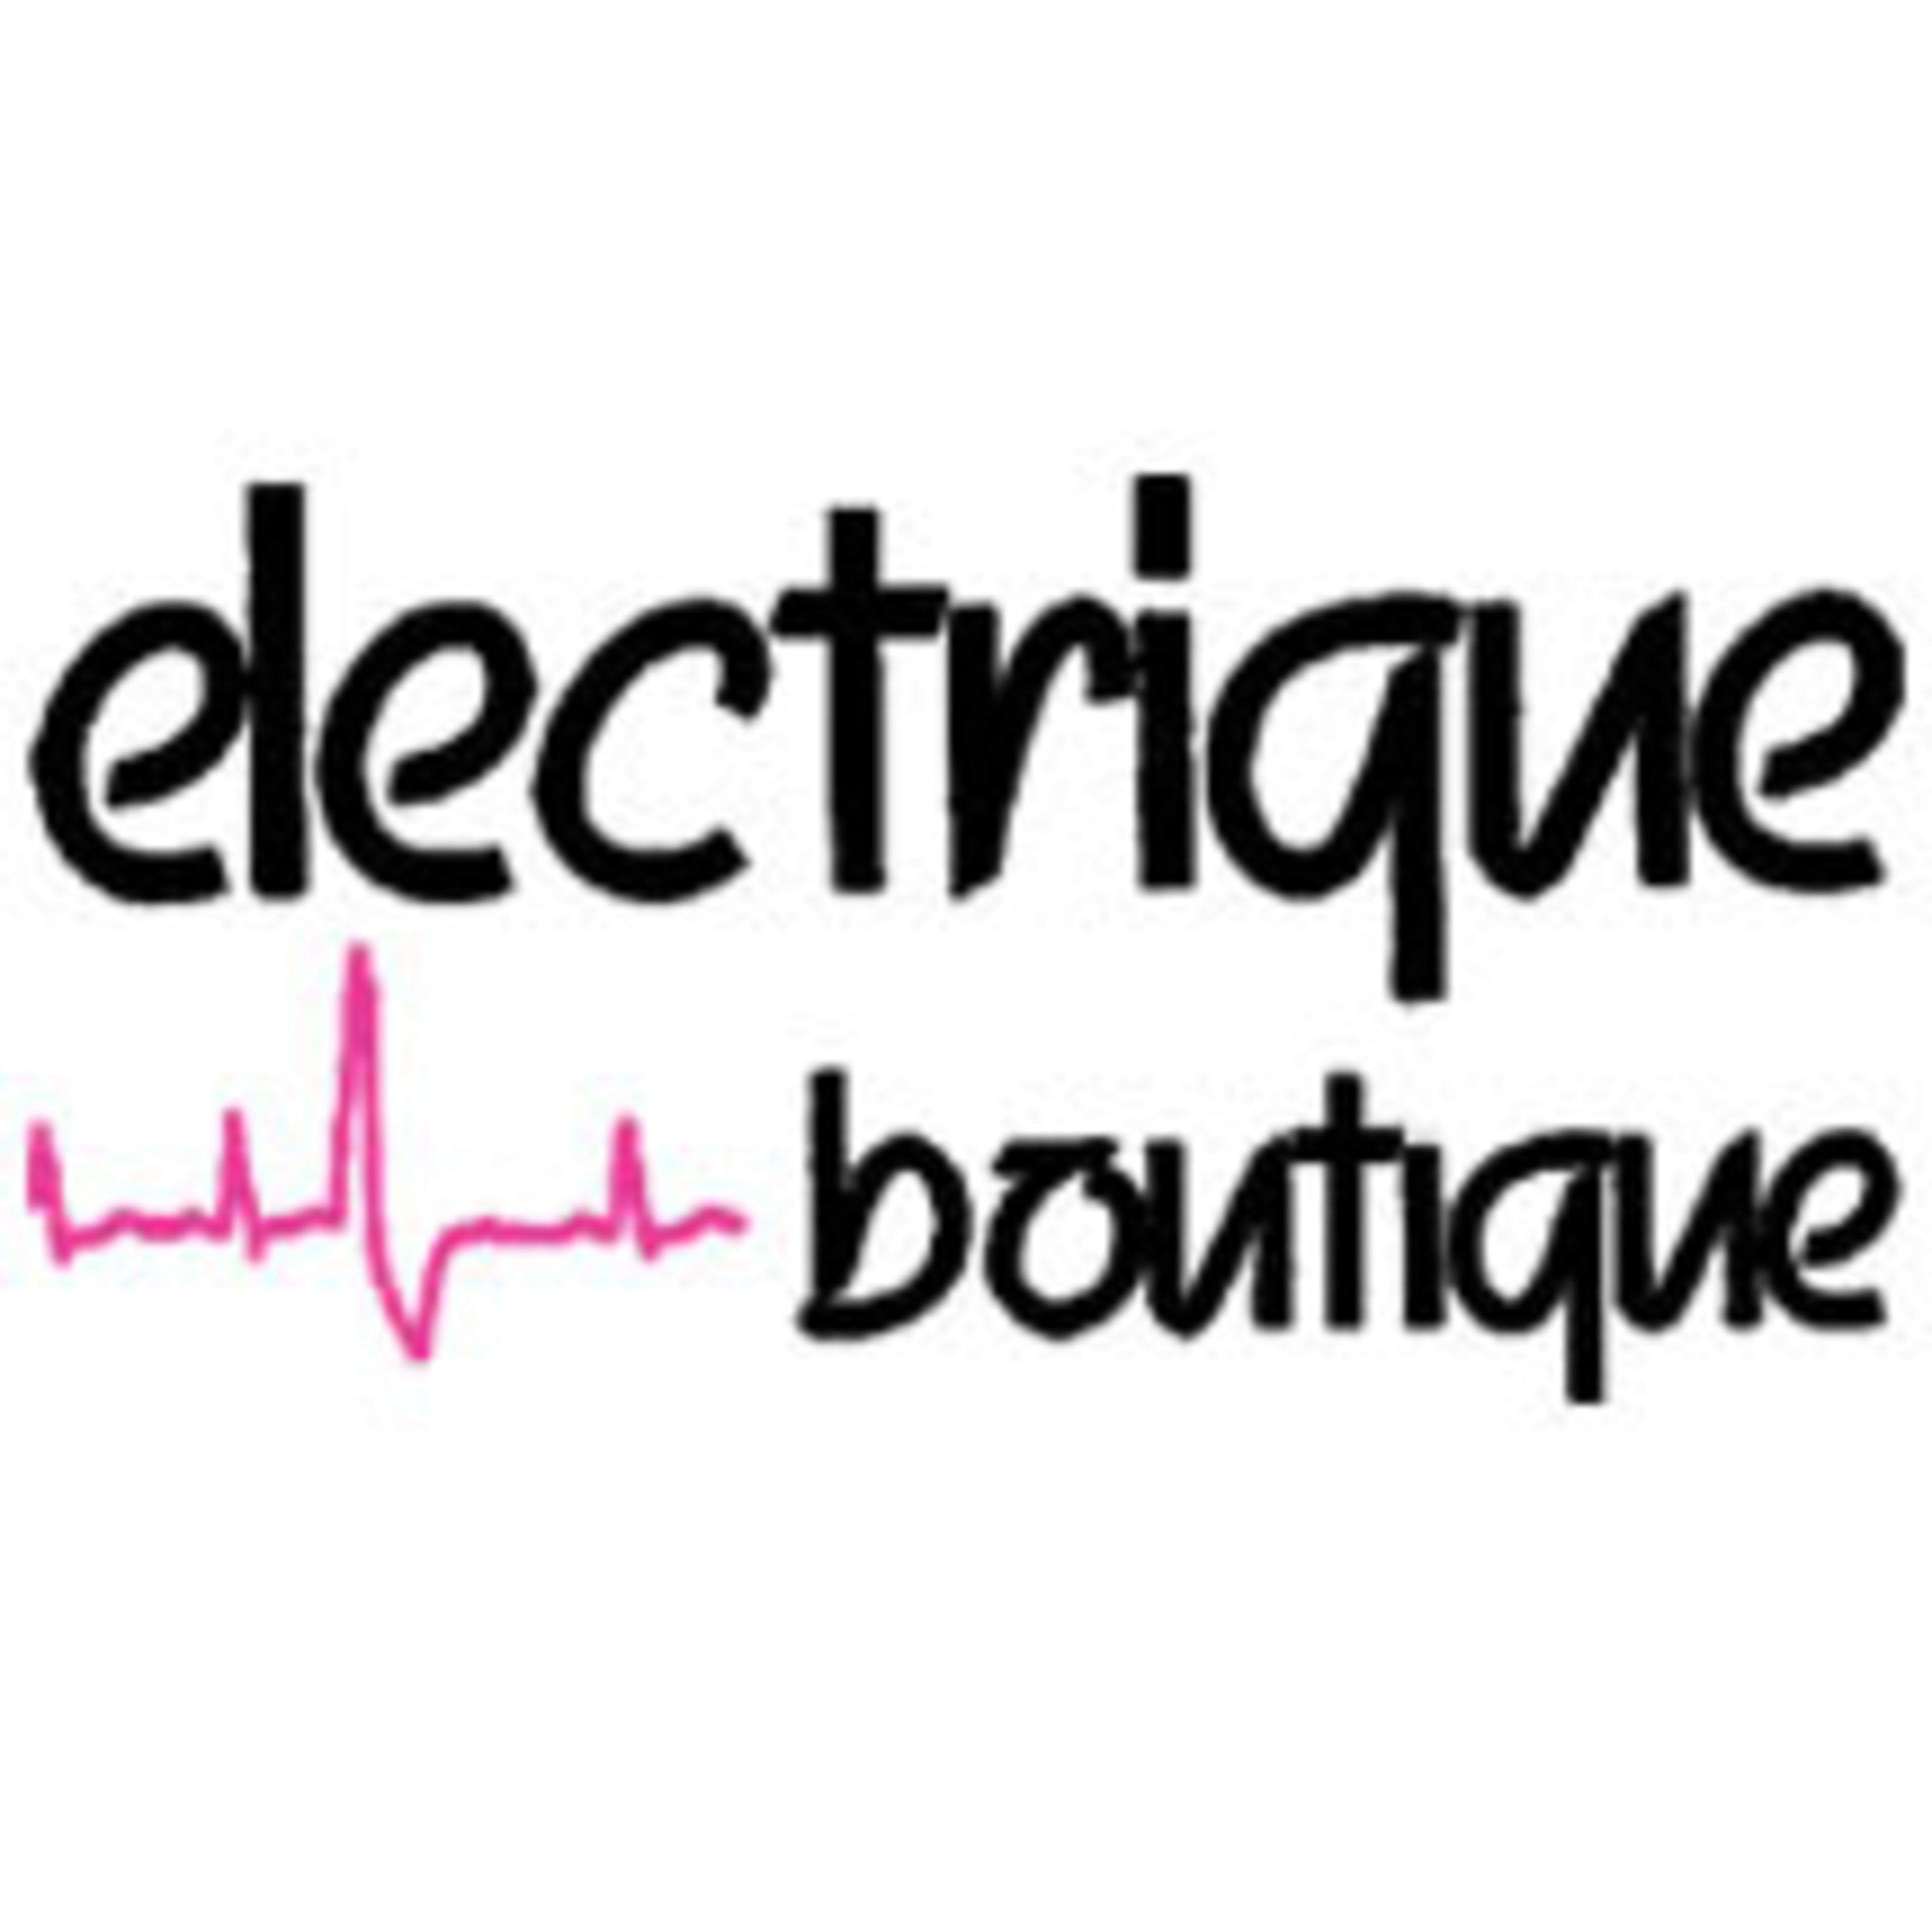 ElectriqueBoutique.com Code